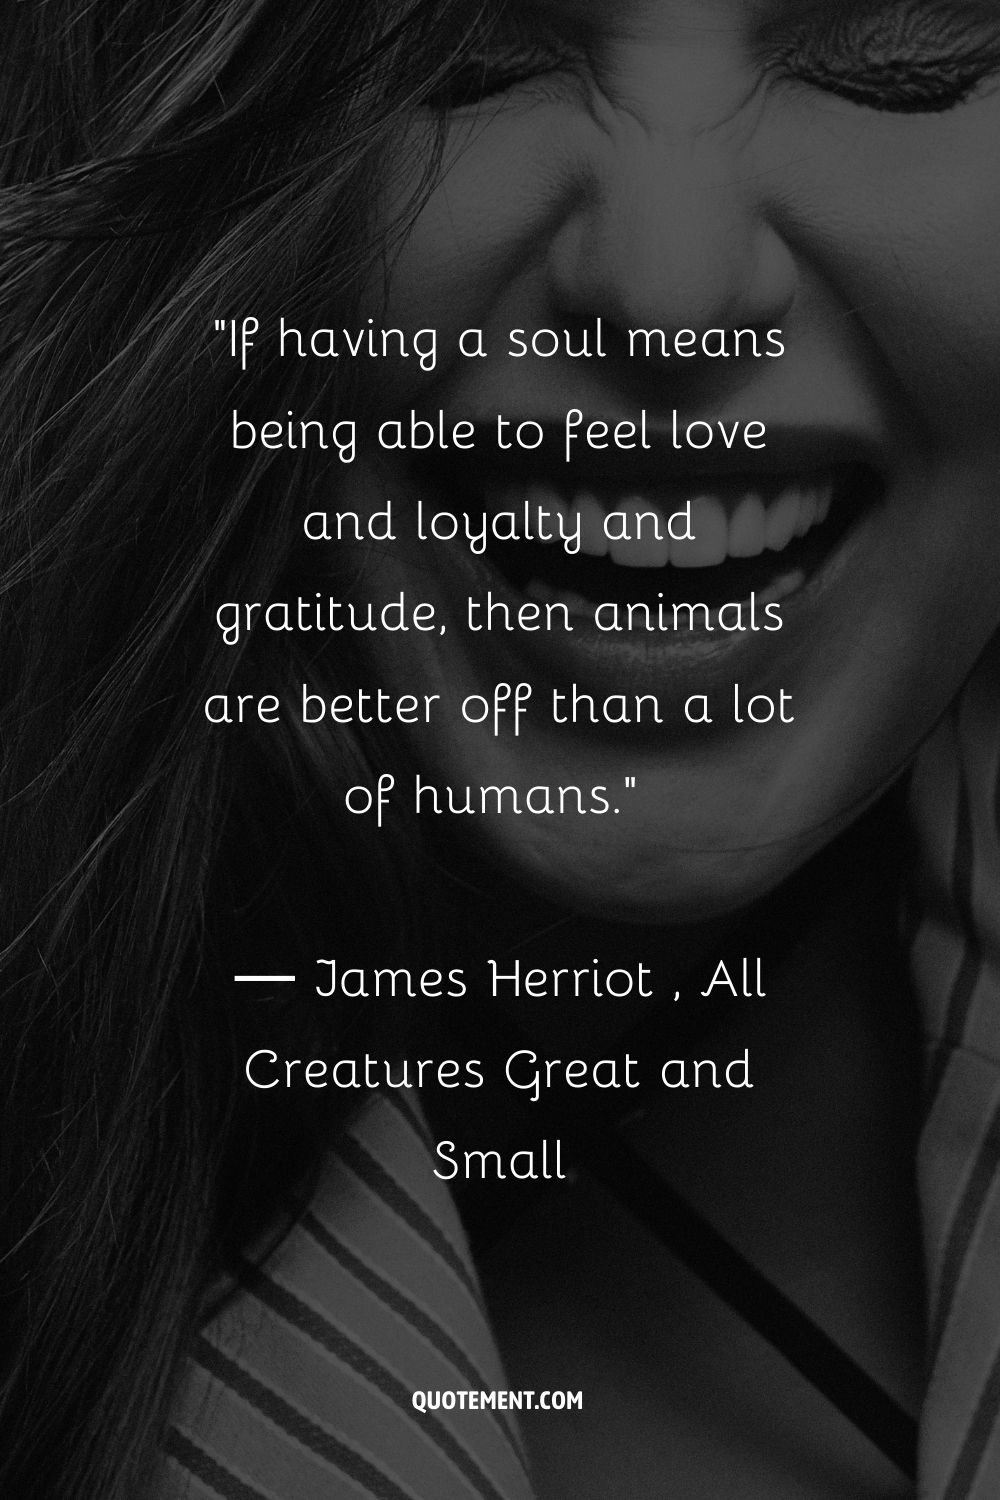 Si tener alma significa ser capaz de sentir amor, lealtad y gratitud, entonces los animales están mejor que muchos humanos.